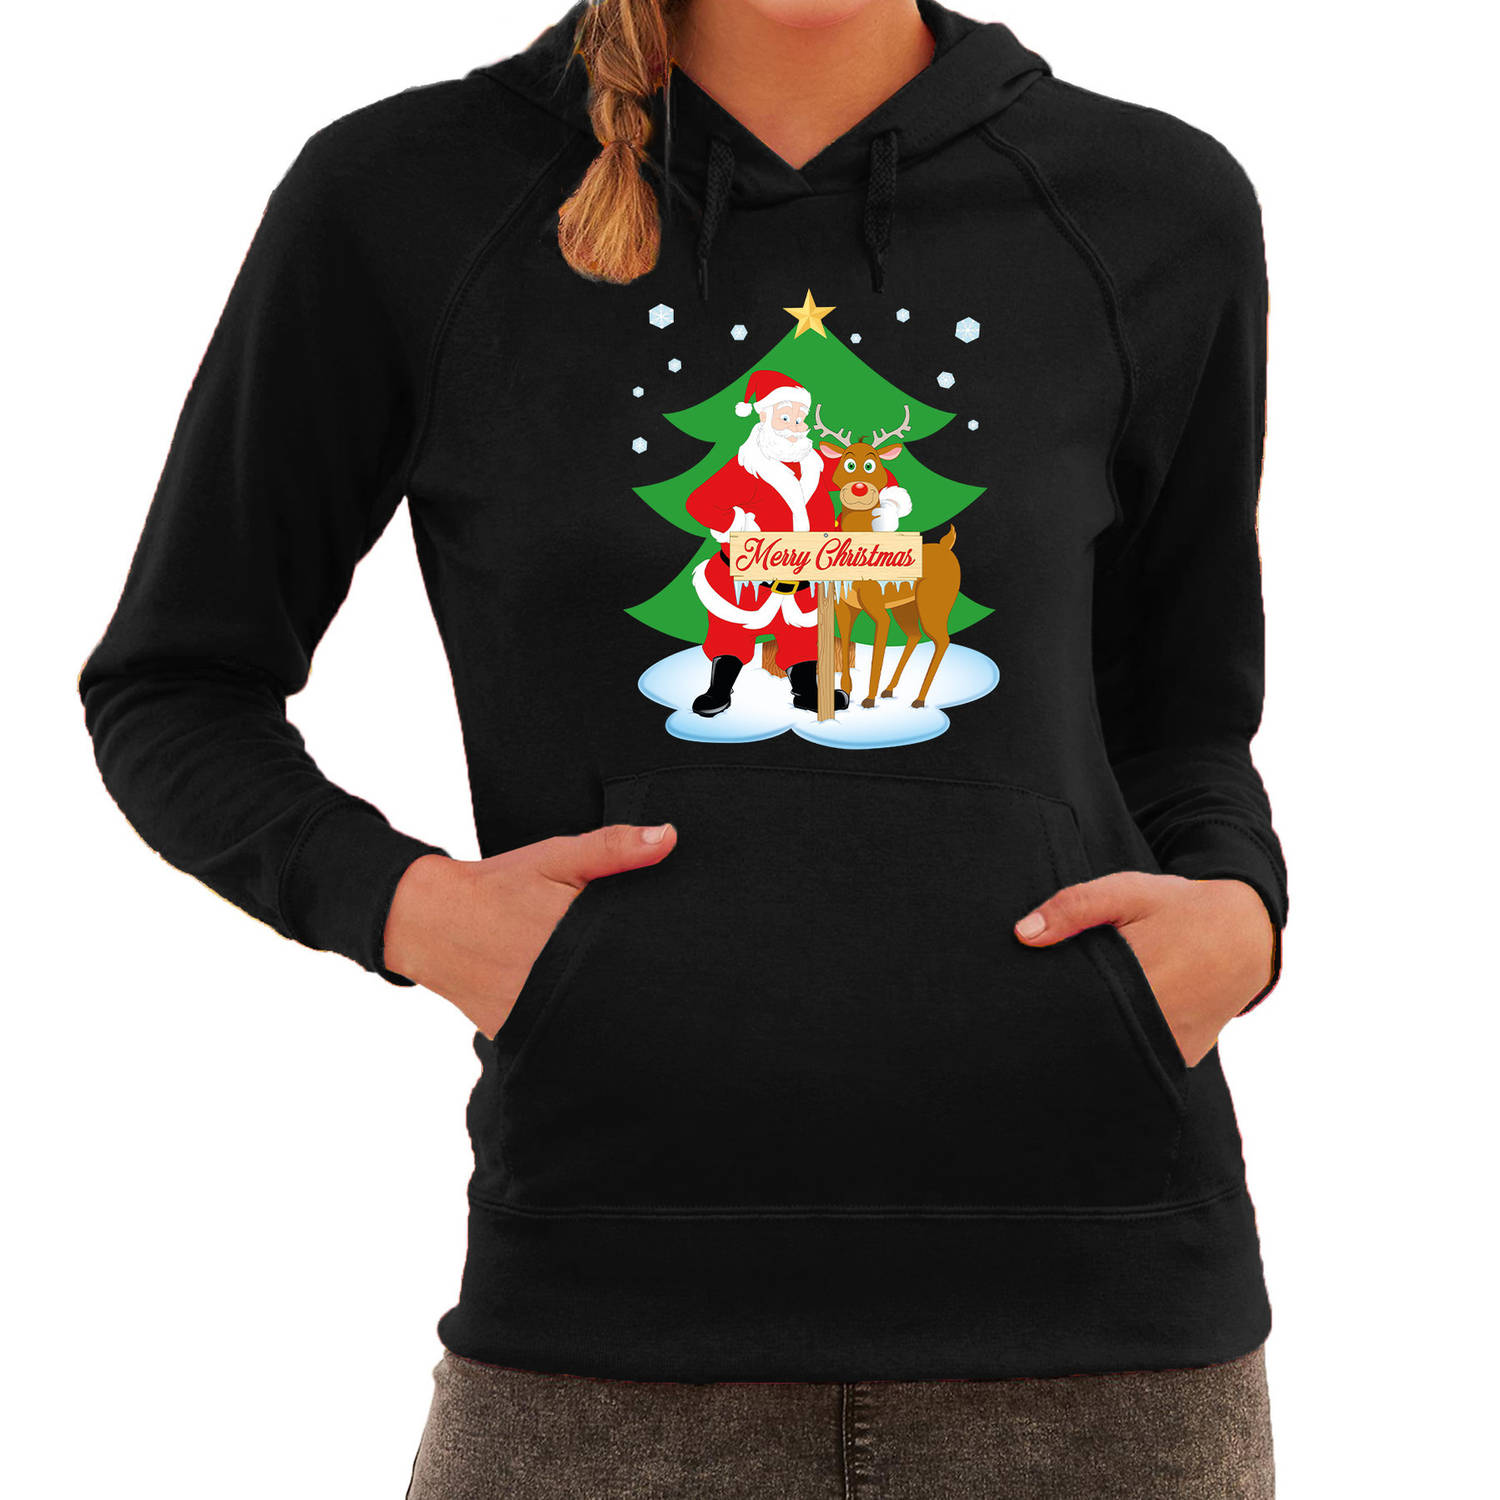 Kerstman met rudolf bij Kerstboom Merry Christmas foute Kerst hoodie / hooded sweater zwart voor dam 2XL - kerst truien